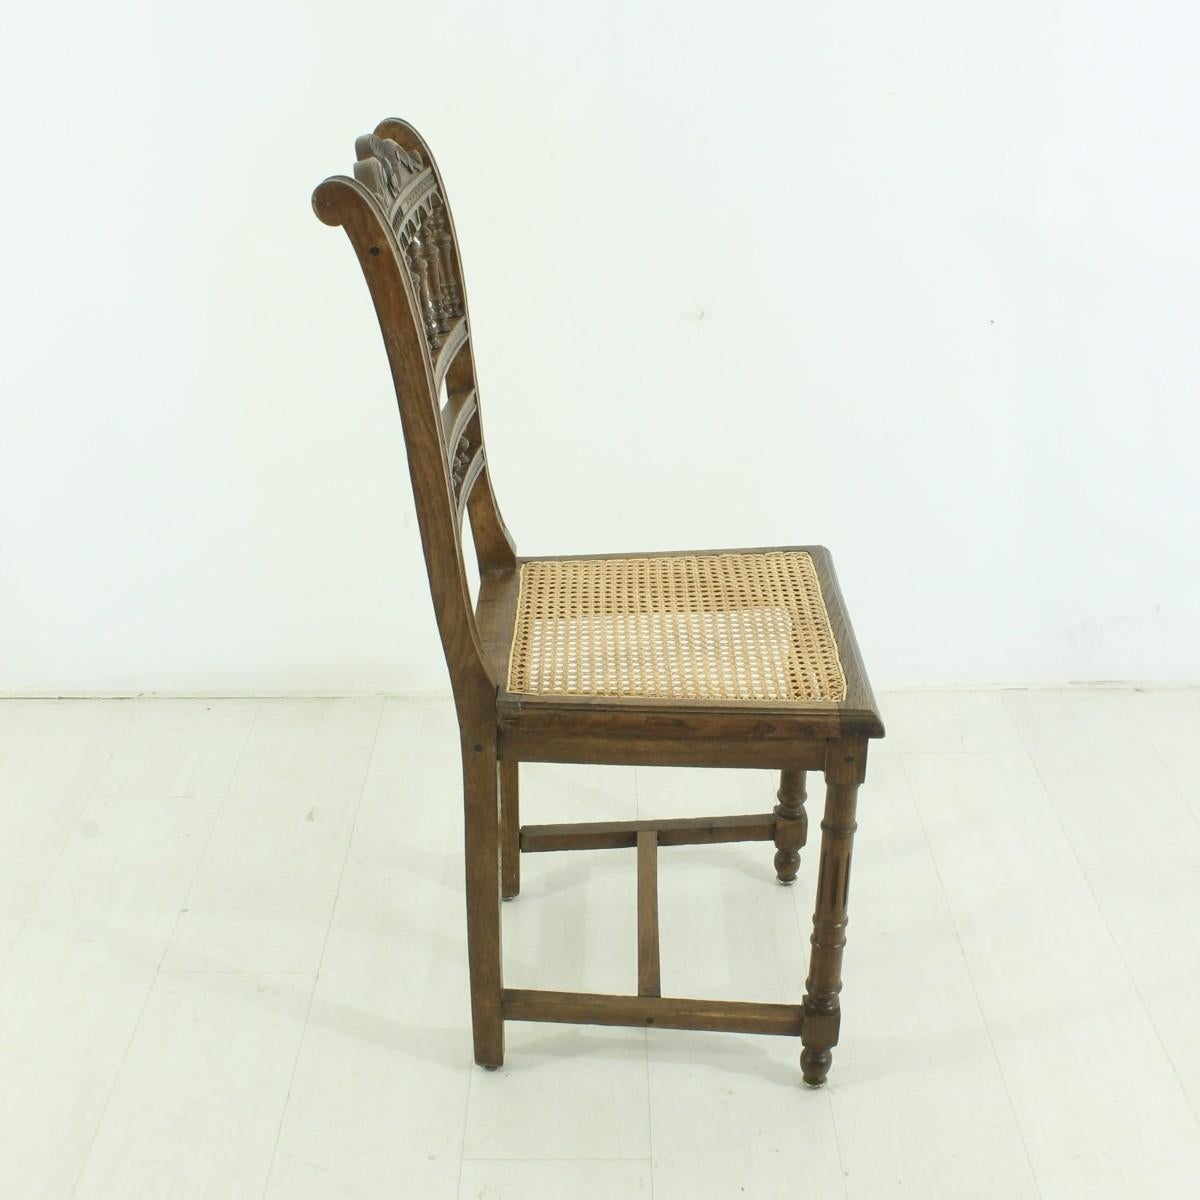 German Antique Chair, circa 1900